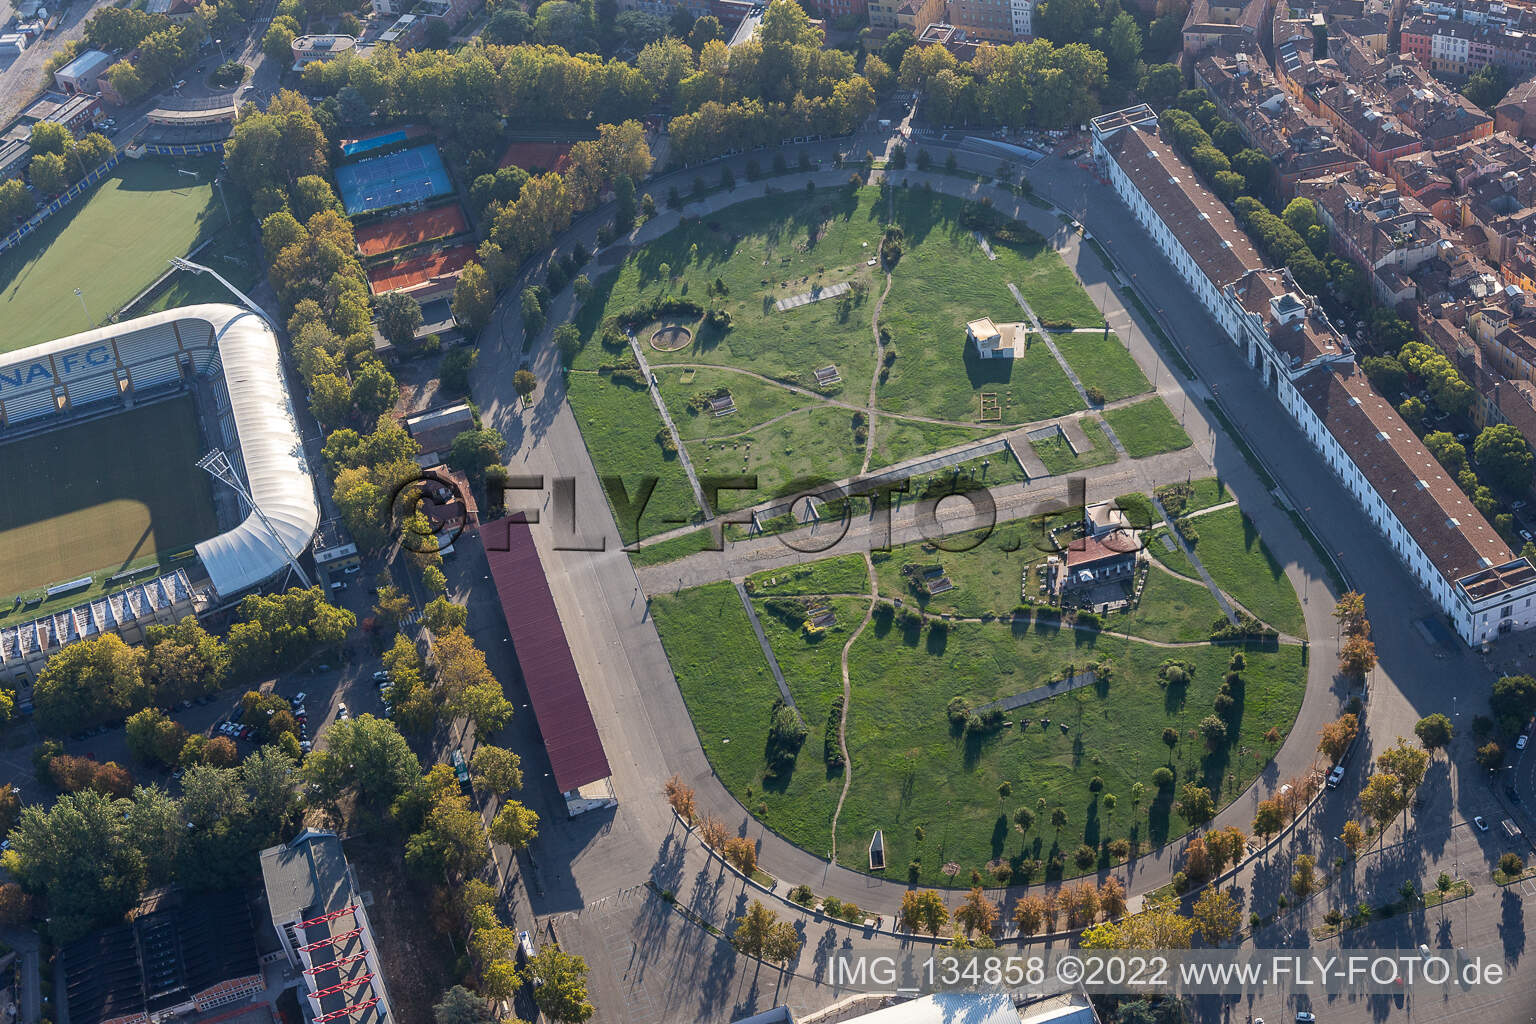 Luftaufnahme von Parco archeologico Novi Ark in Modena, Italien